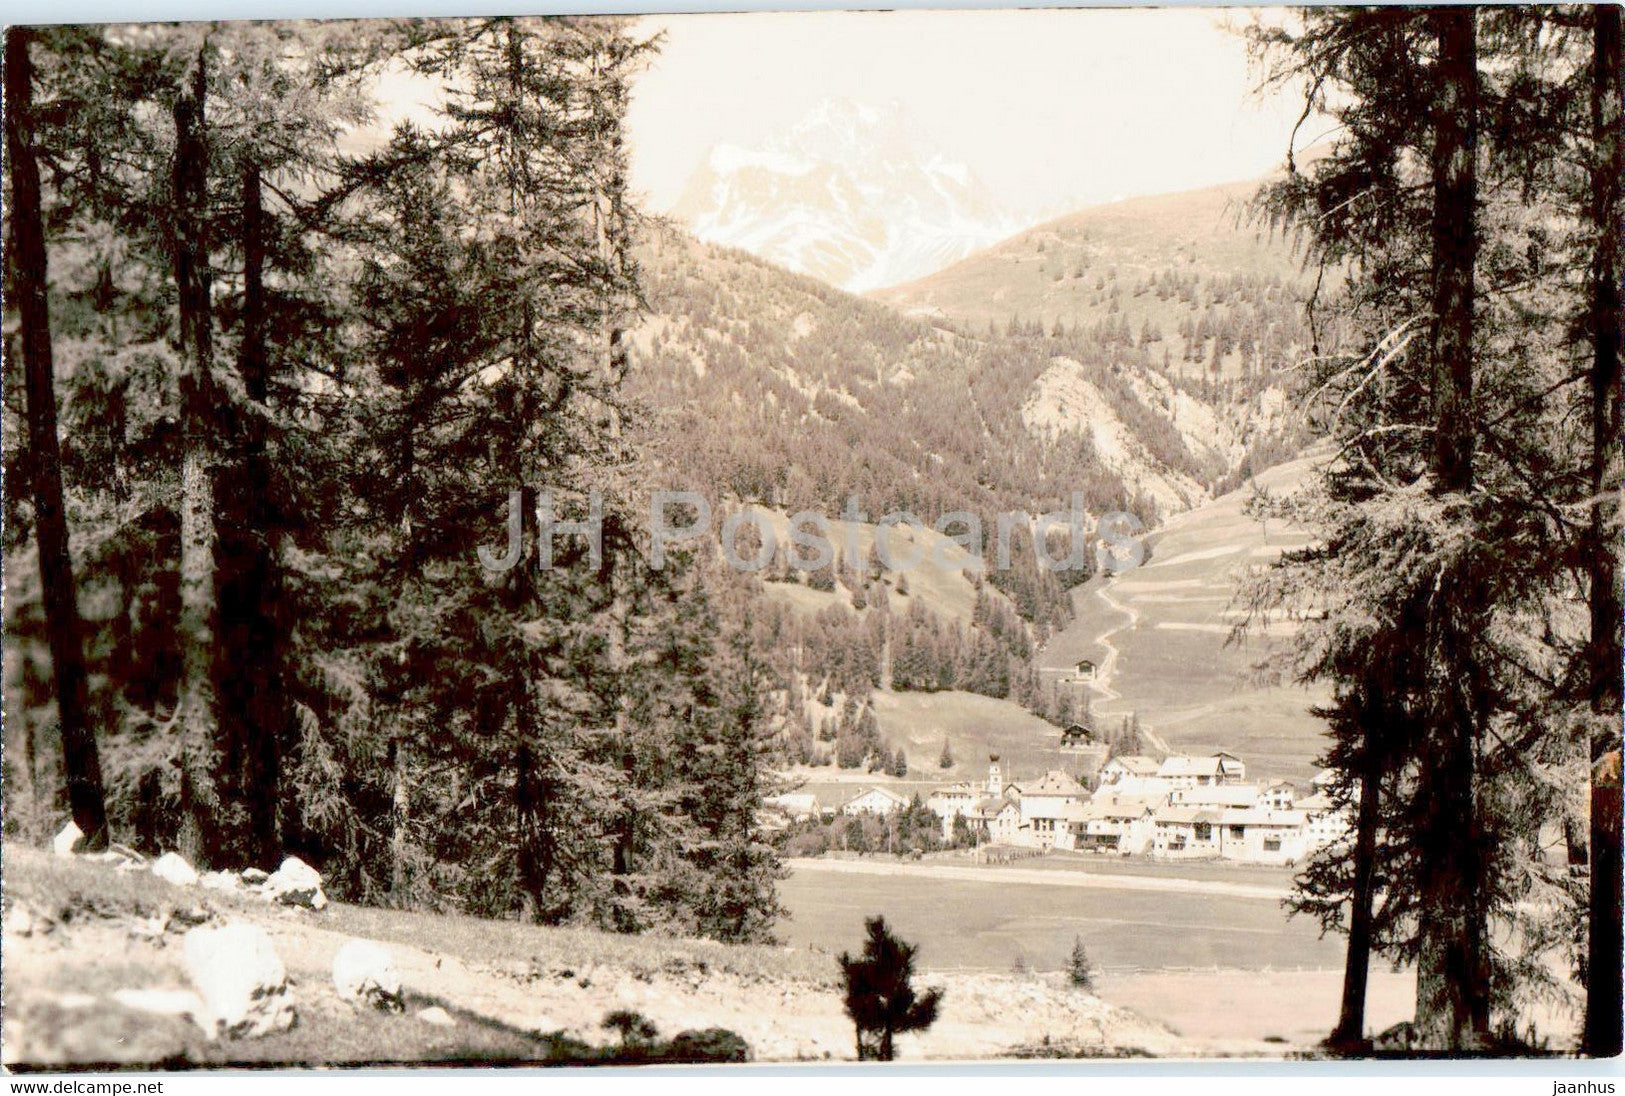 Madulain - Engadin - 4187 - old postcard - Switzerland - unused - JH Postcards